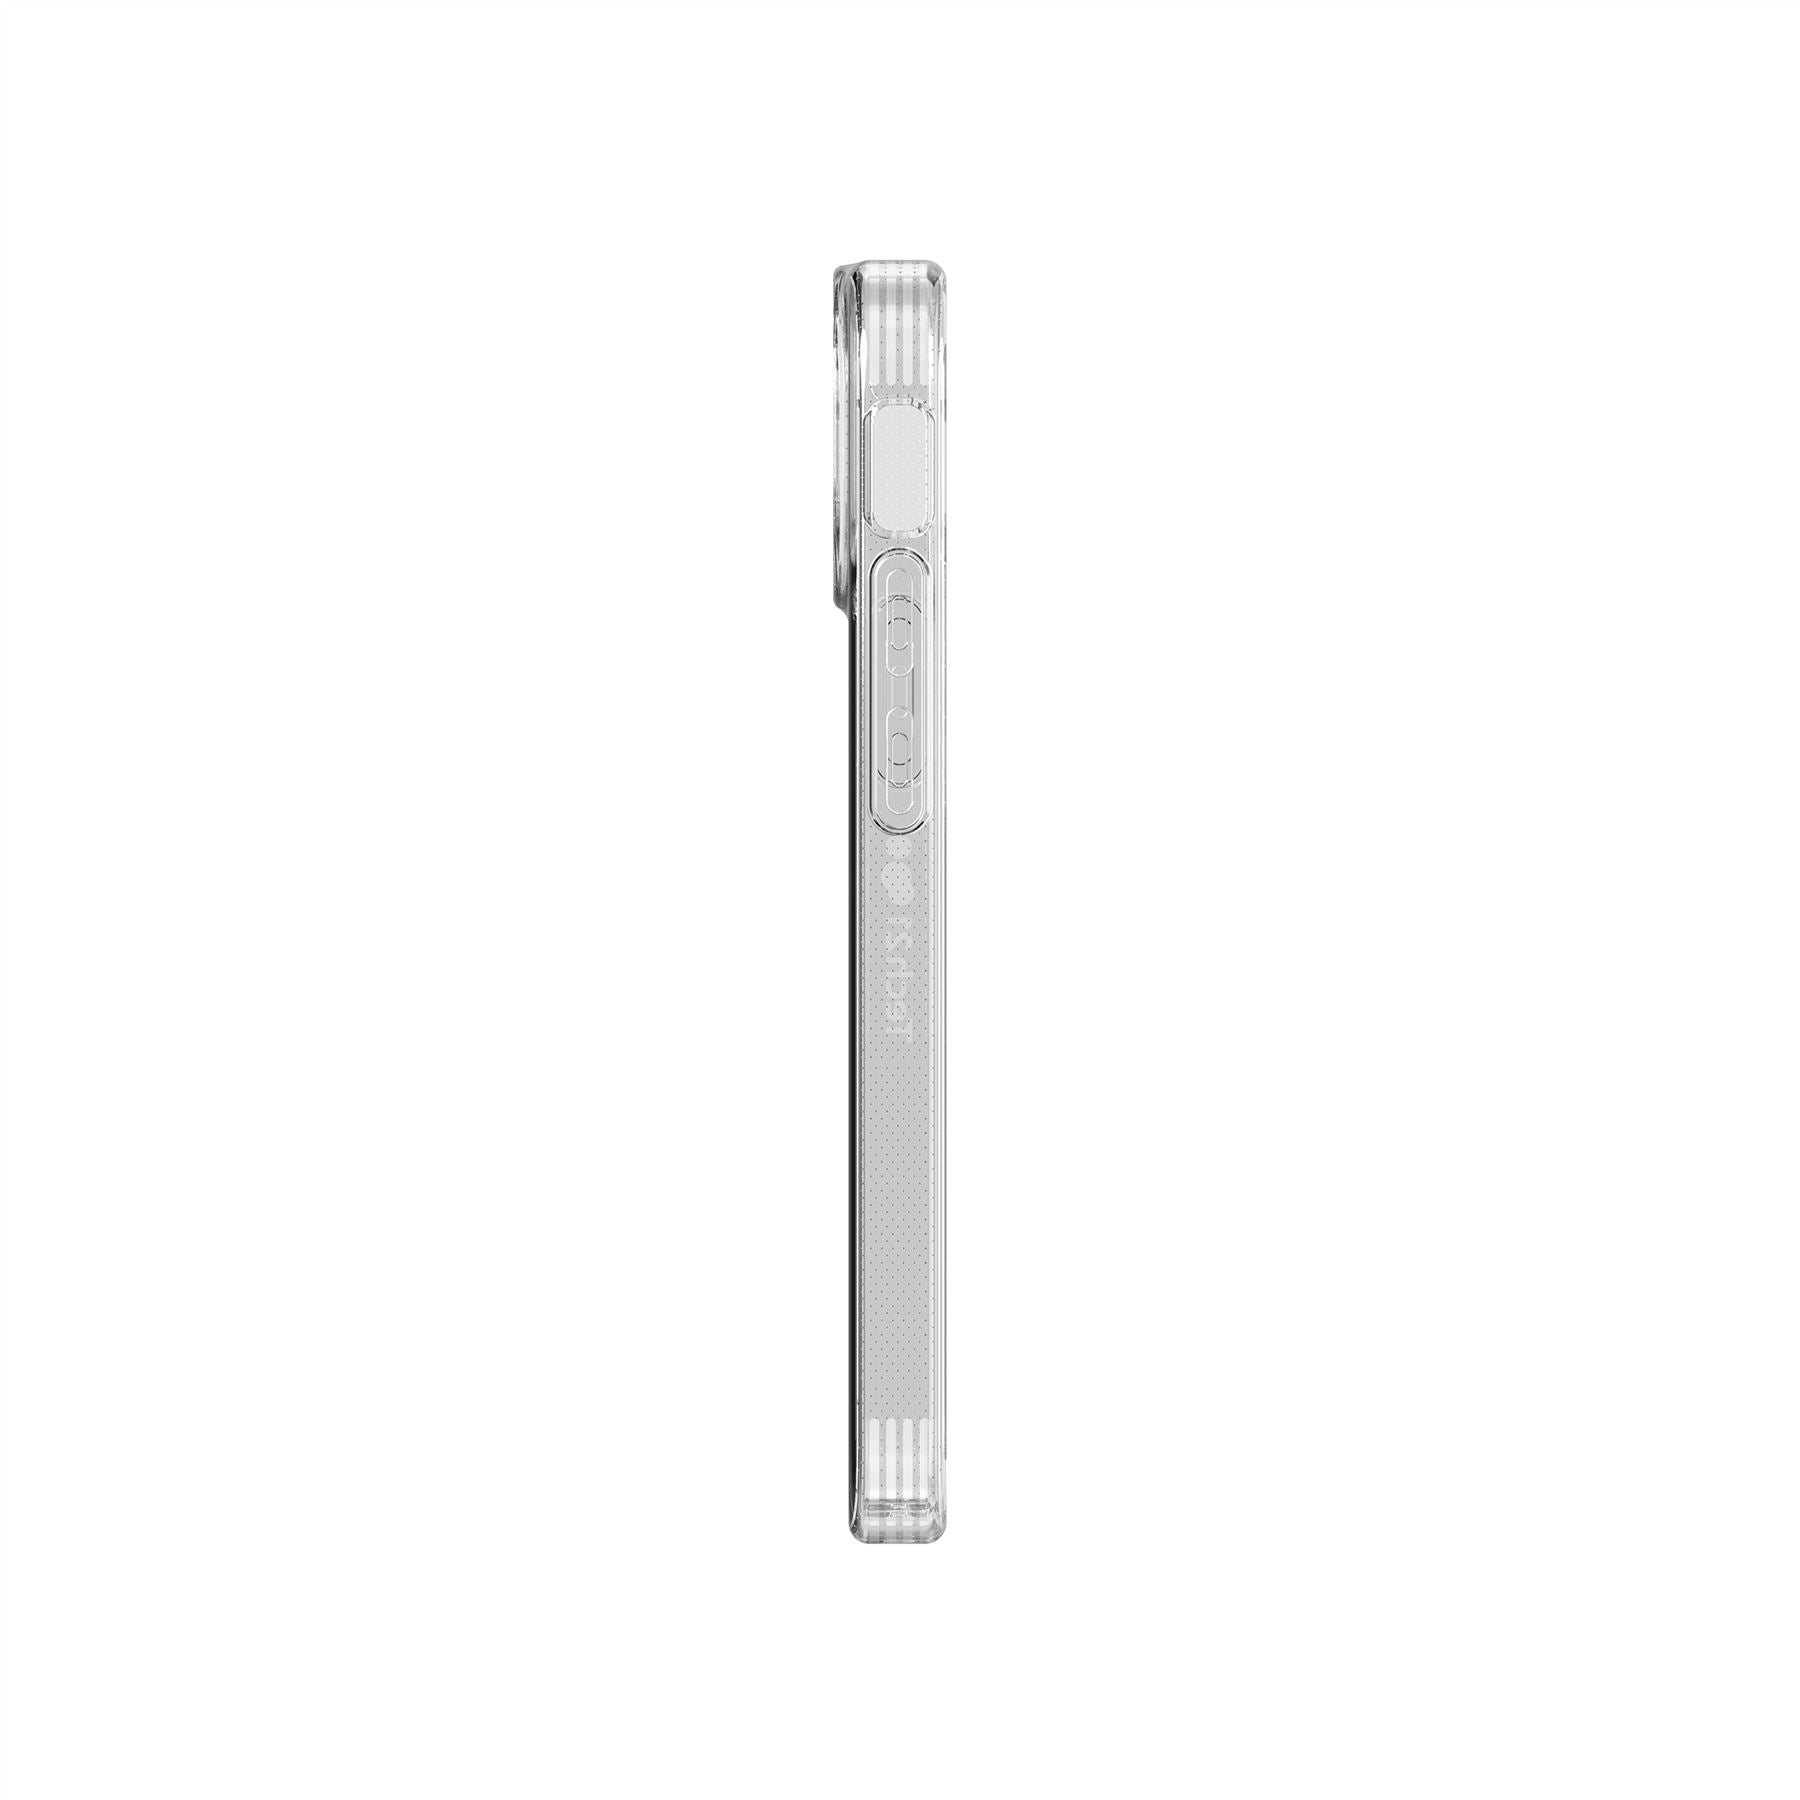 Evo Lite - Apple iPhone 13 mini Case - Clear